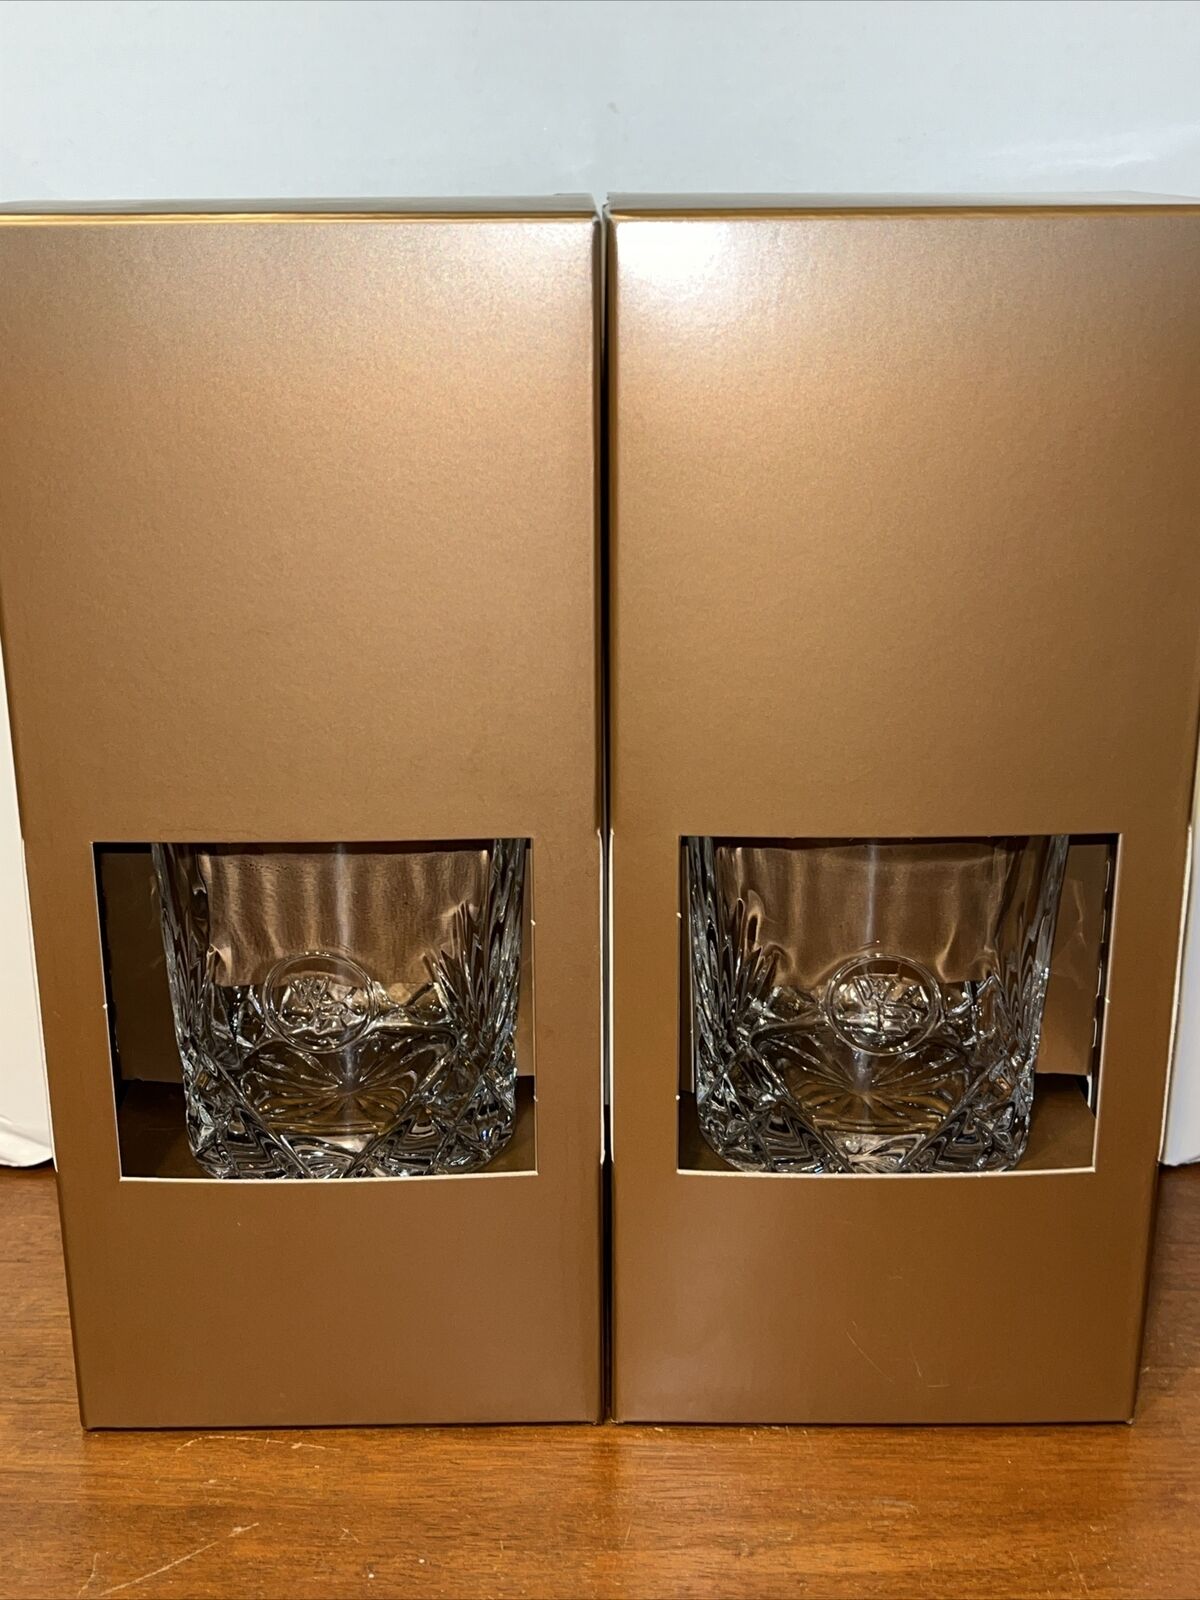 Glencairn WR Woodford Reserve Bourbon Whiskey Crystal Glasses Lowball New